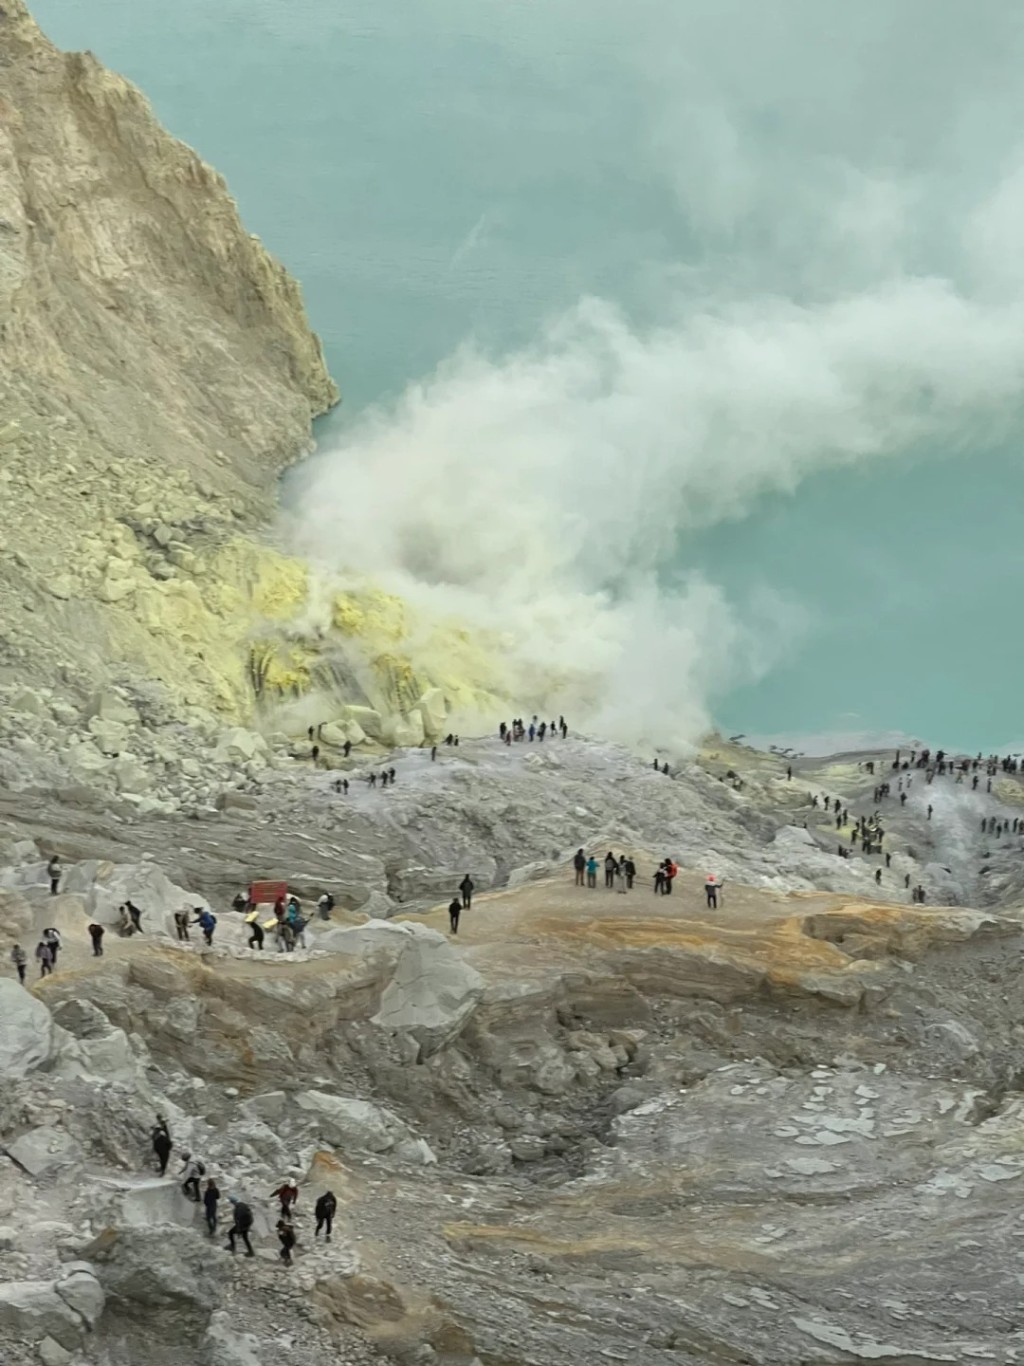 印尼「伊真火山」吸引全球各地游客。小红书